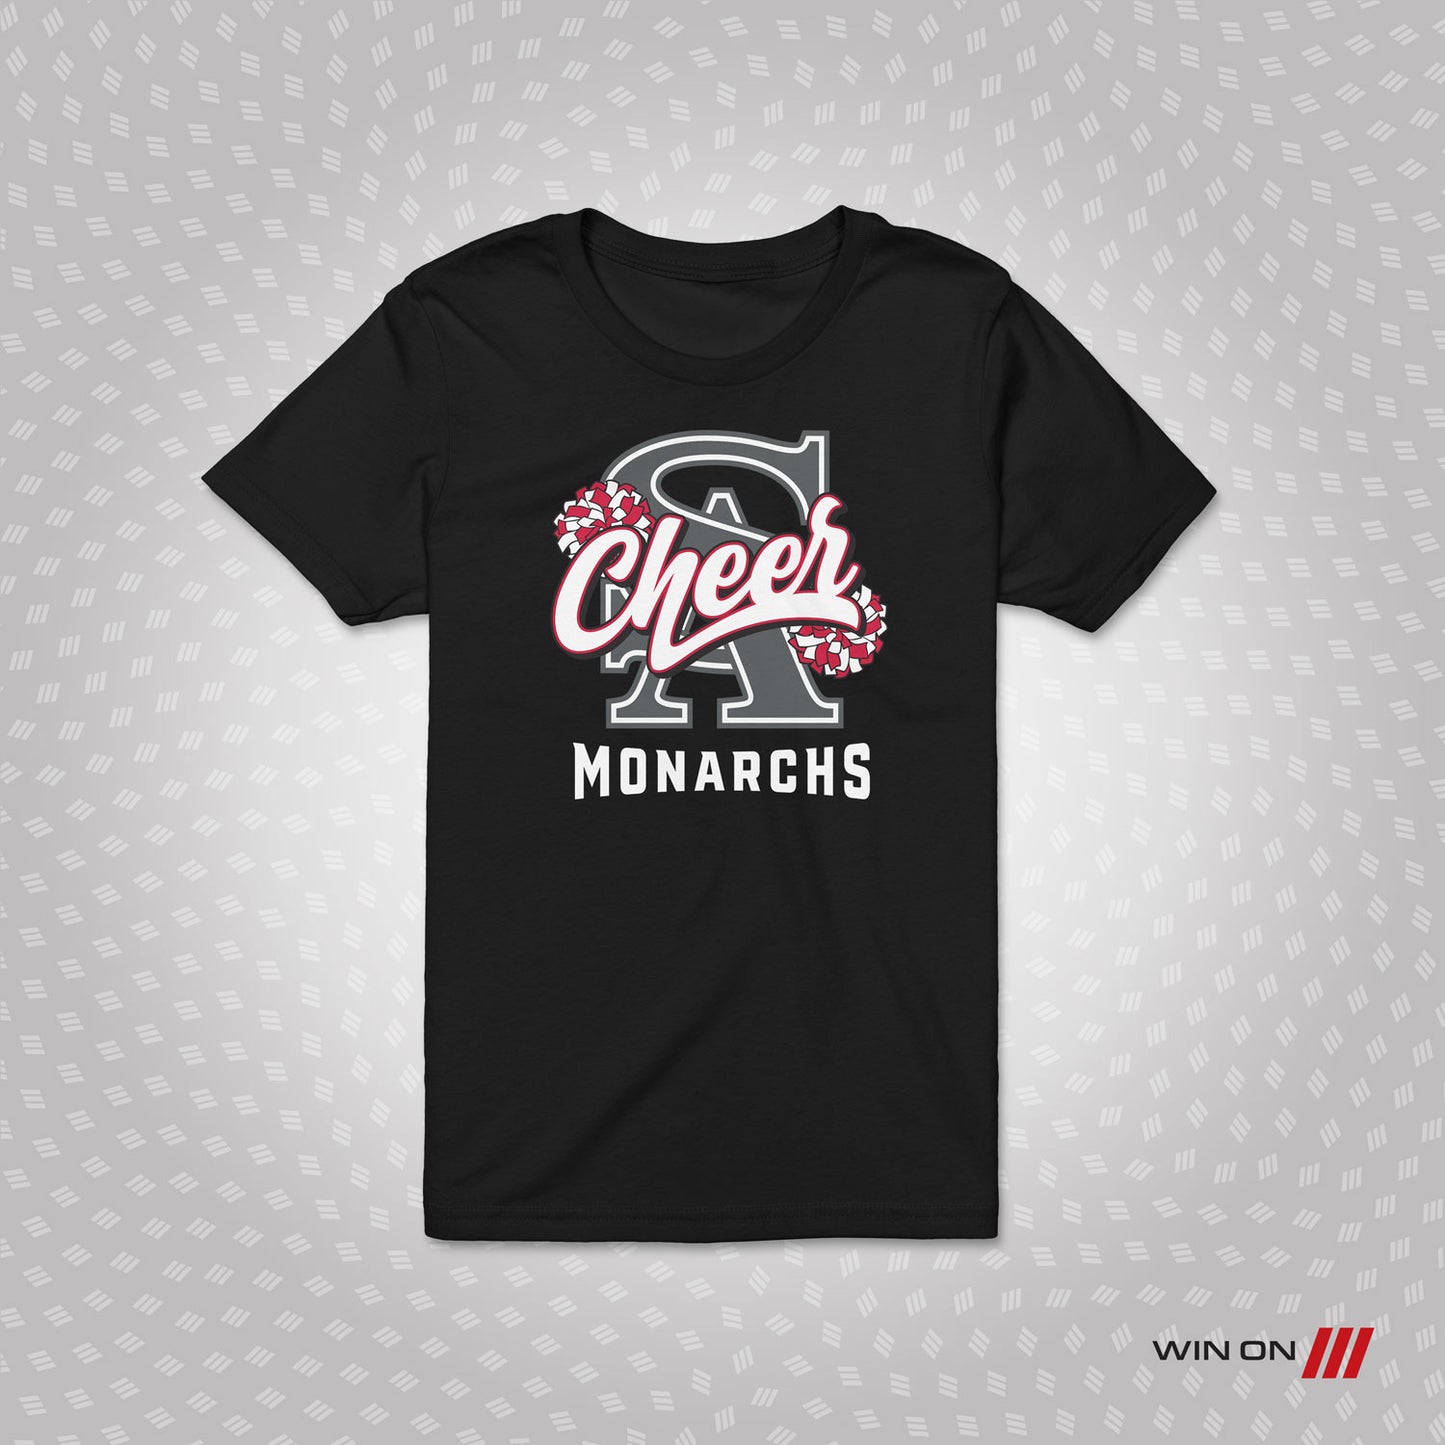 SA Monarchs "Cheer" T-shirt (Youth)